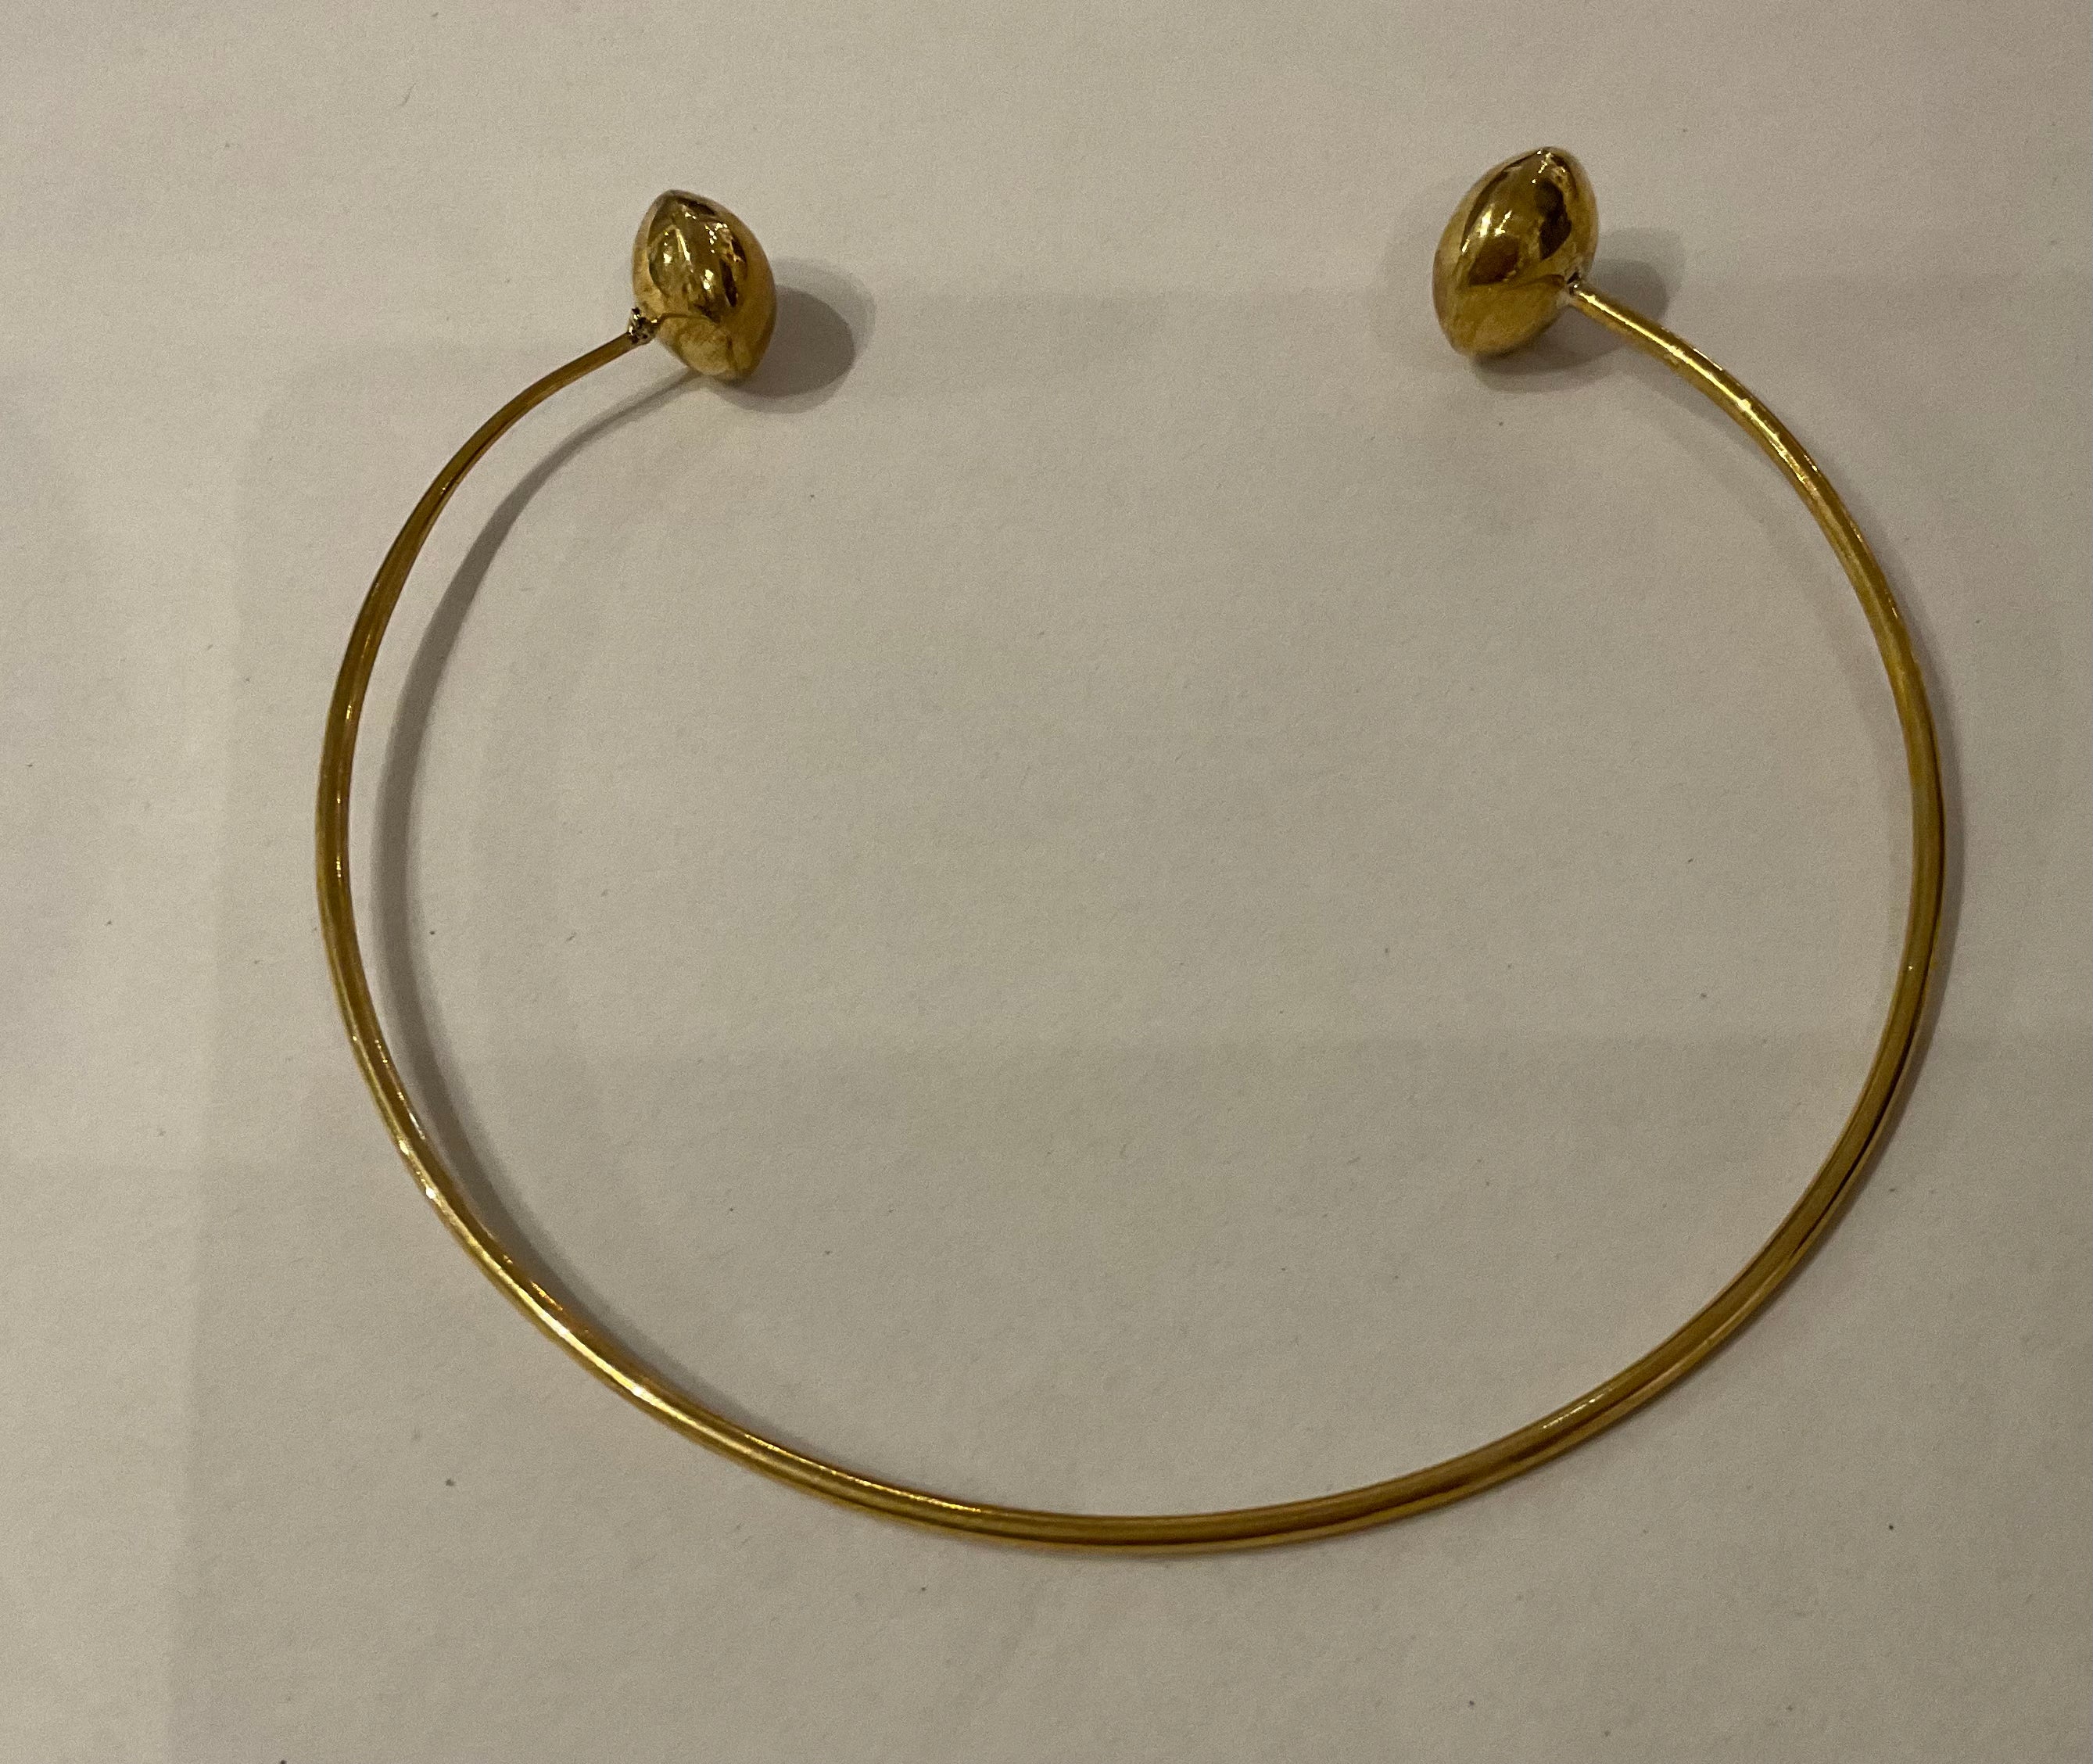 Bronze hoop necklace